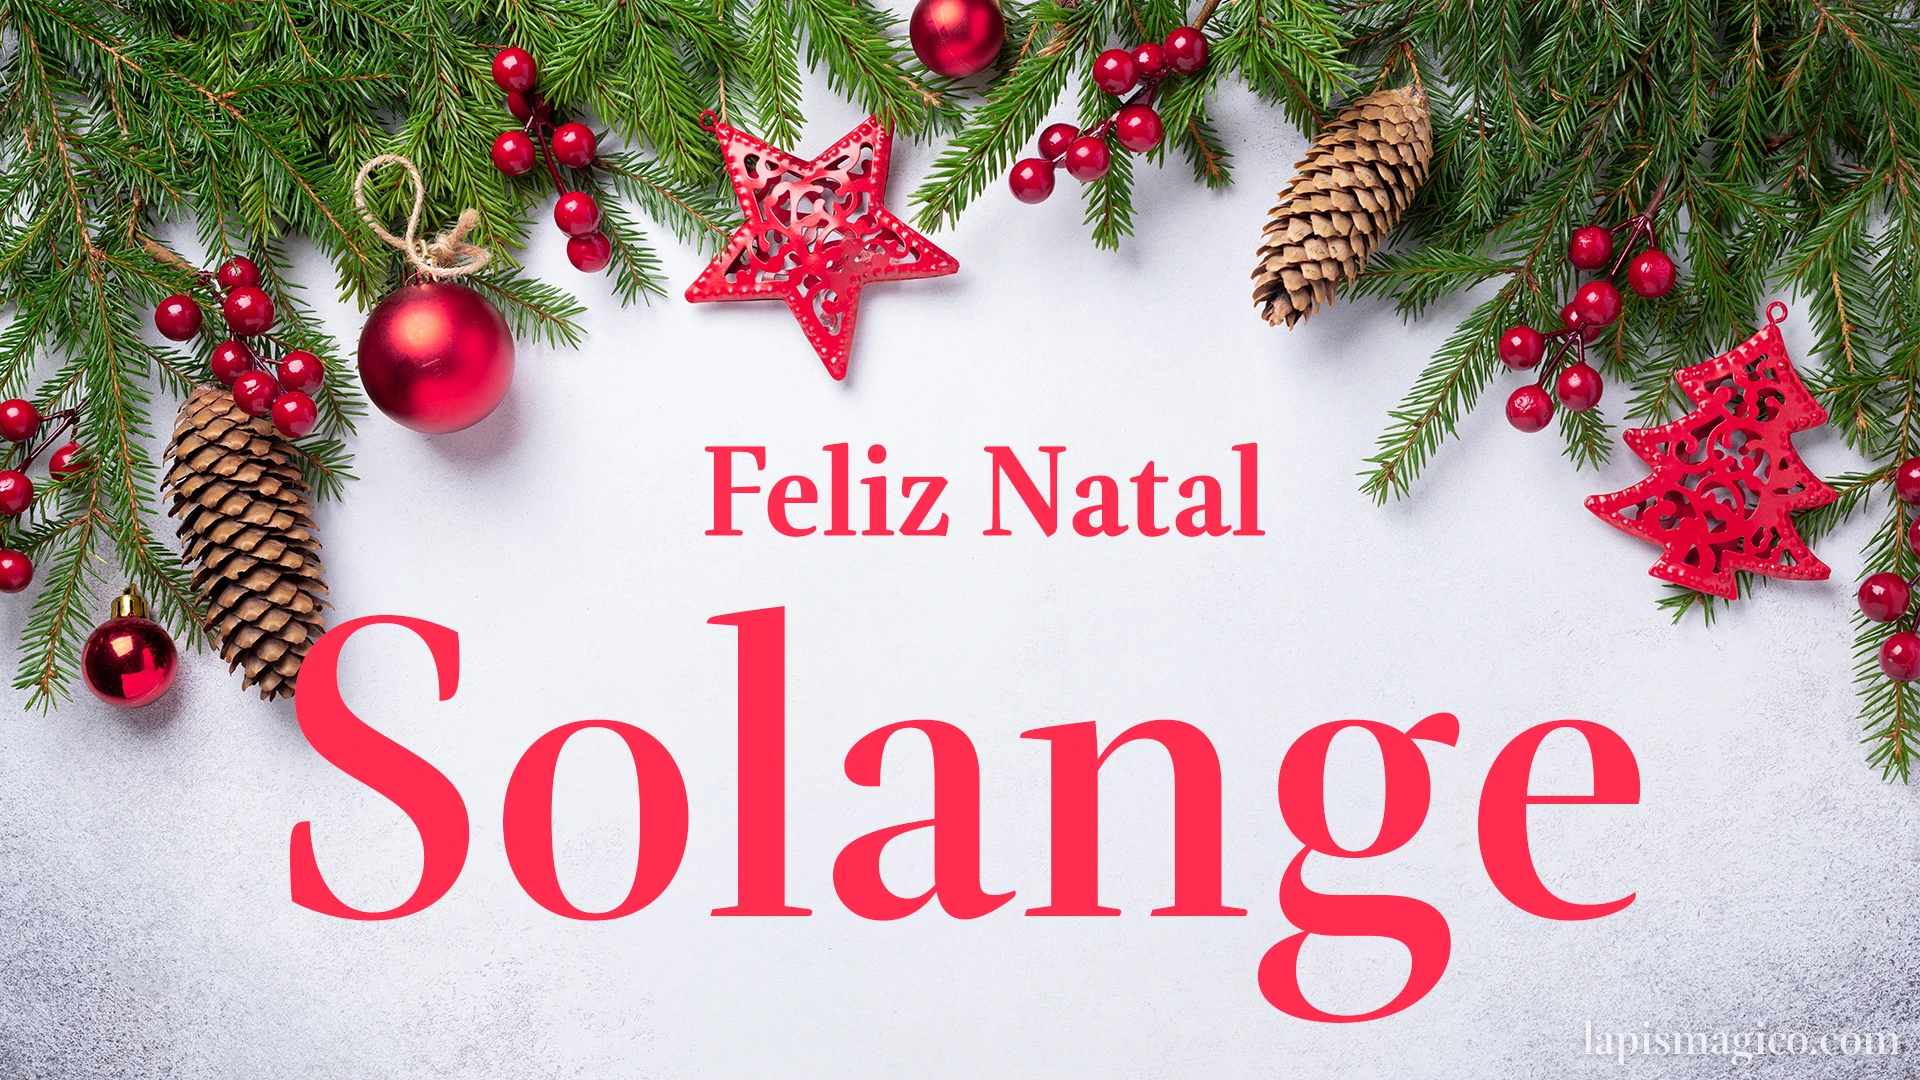 Oh Solange, cinco postais de Feliz Natal Postal com o teu nome